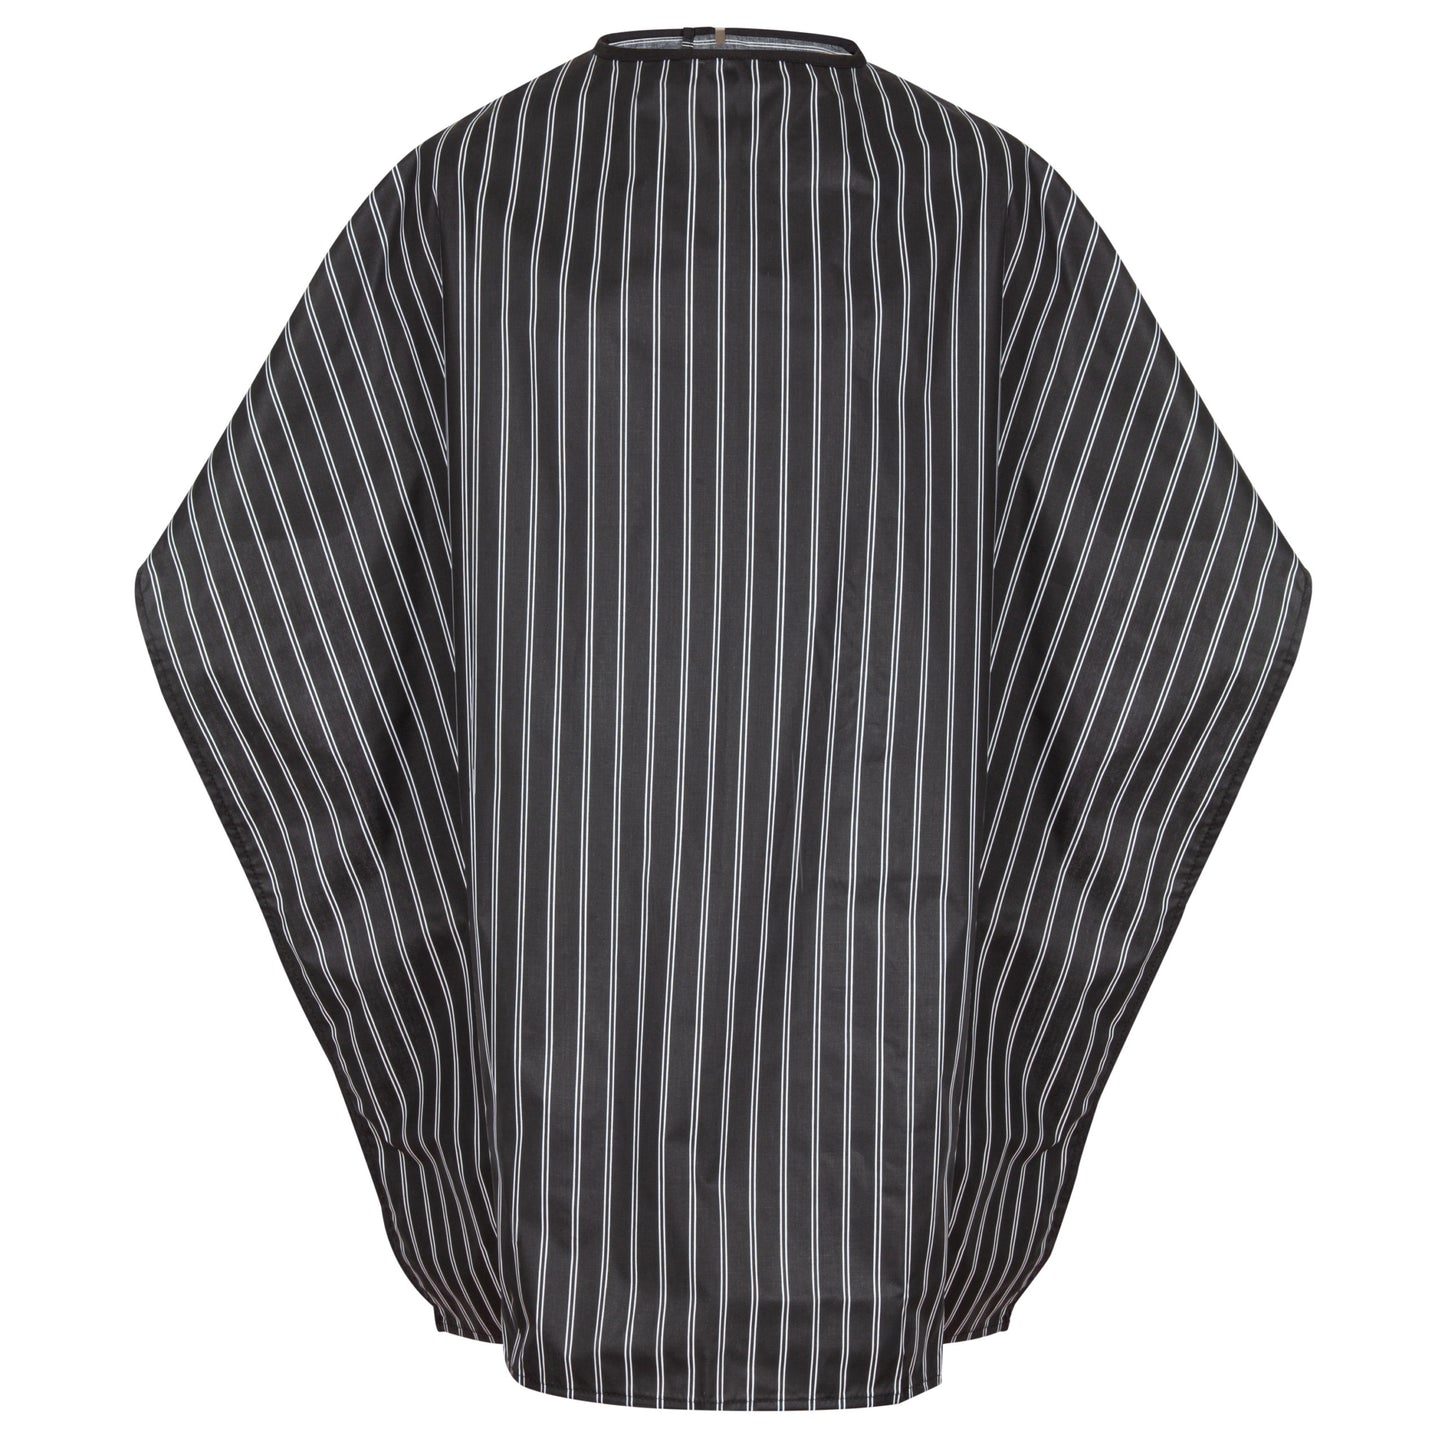 Hair/Chair Cloth, 45x50 inch, Black with White Stripe